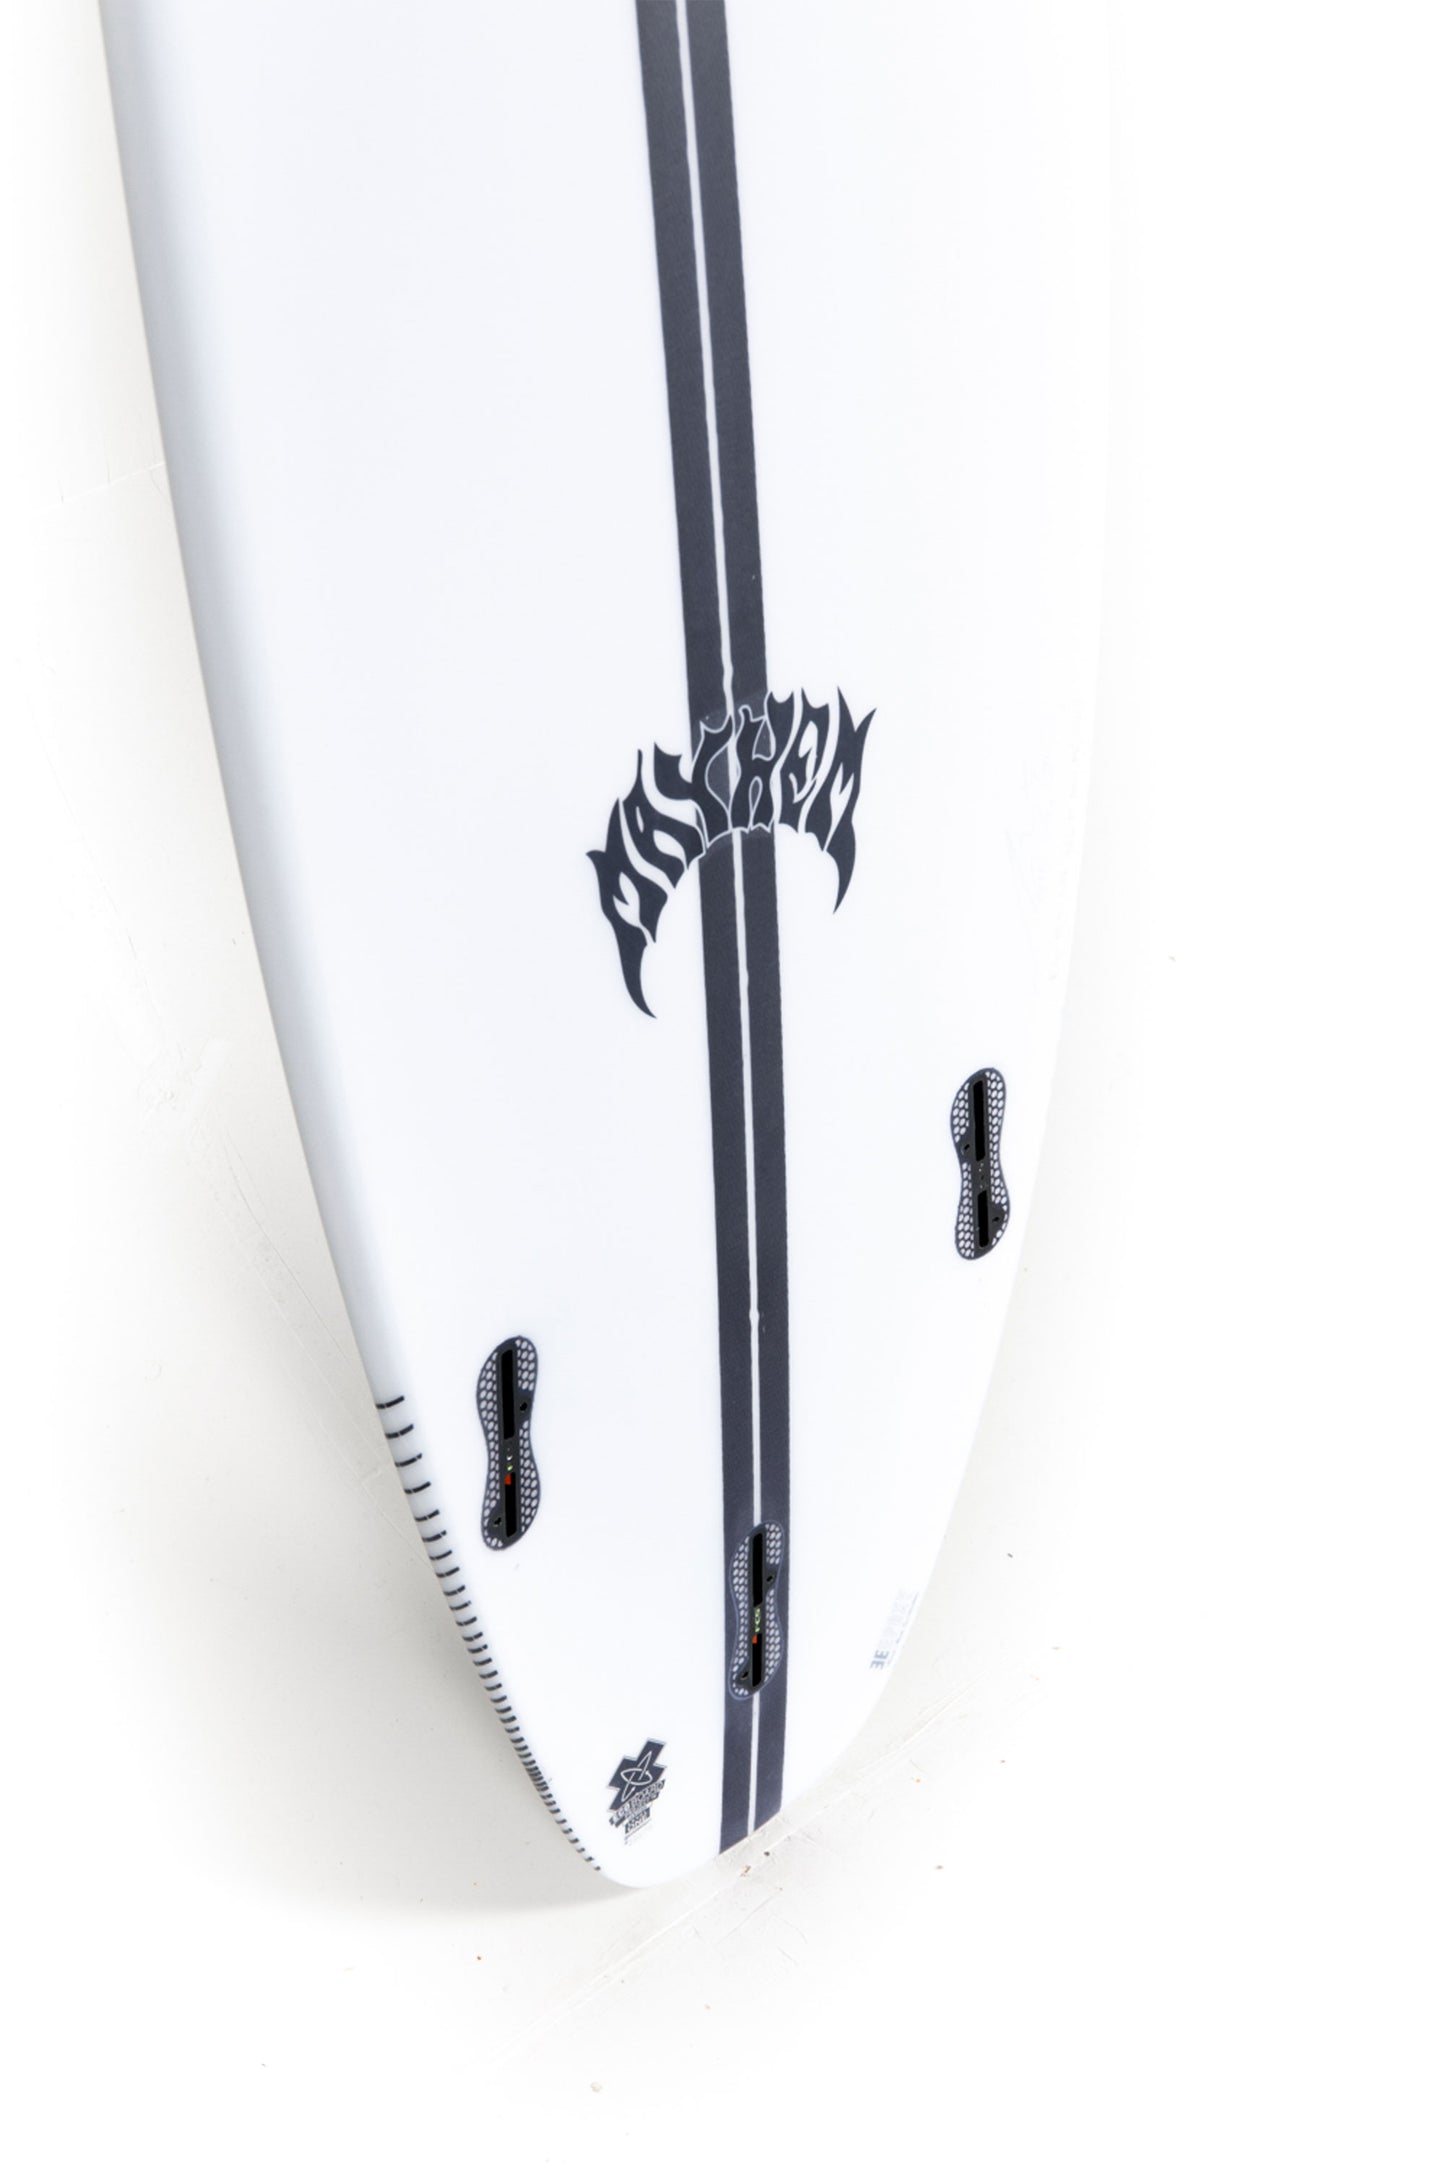 
                  
                    Lost Surfboard - SUB DRIVER 2.0 by Matt Biolos - Light Speed - 5’10” x 19,5 x 2,44 - 30L - MH11010
                  
                